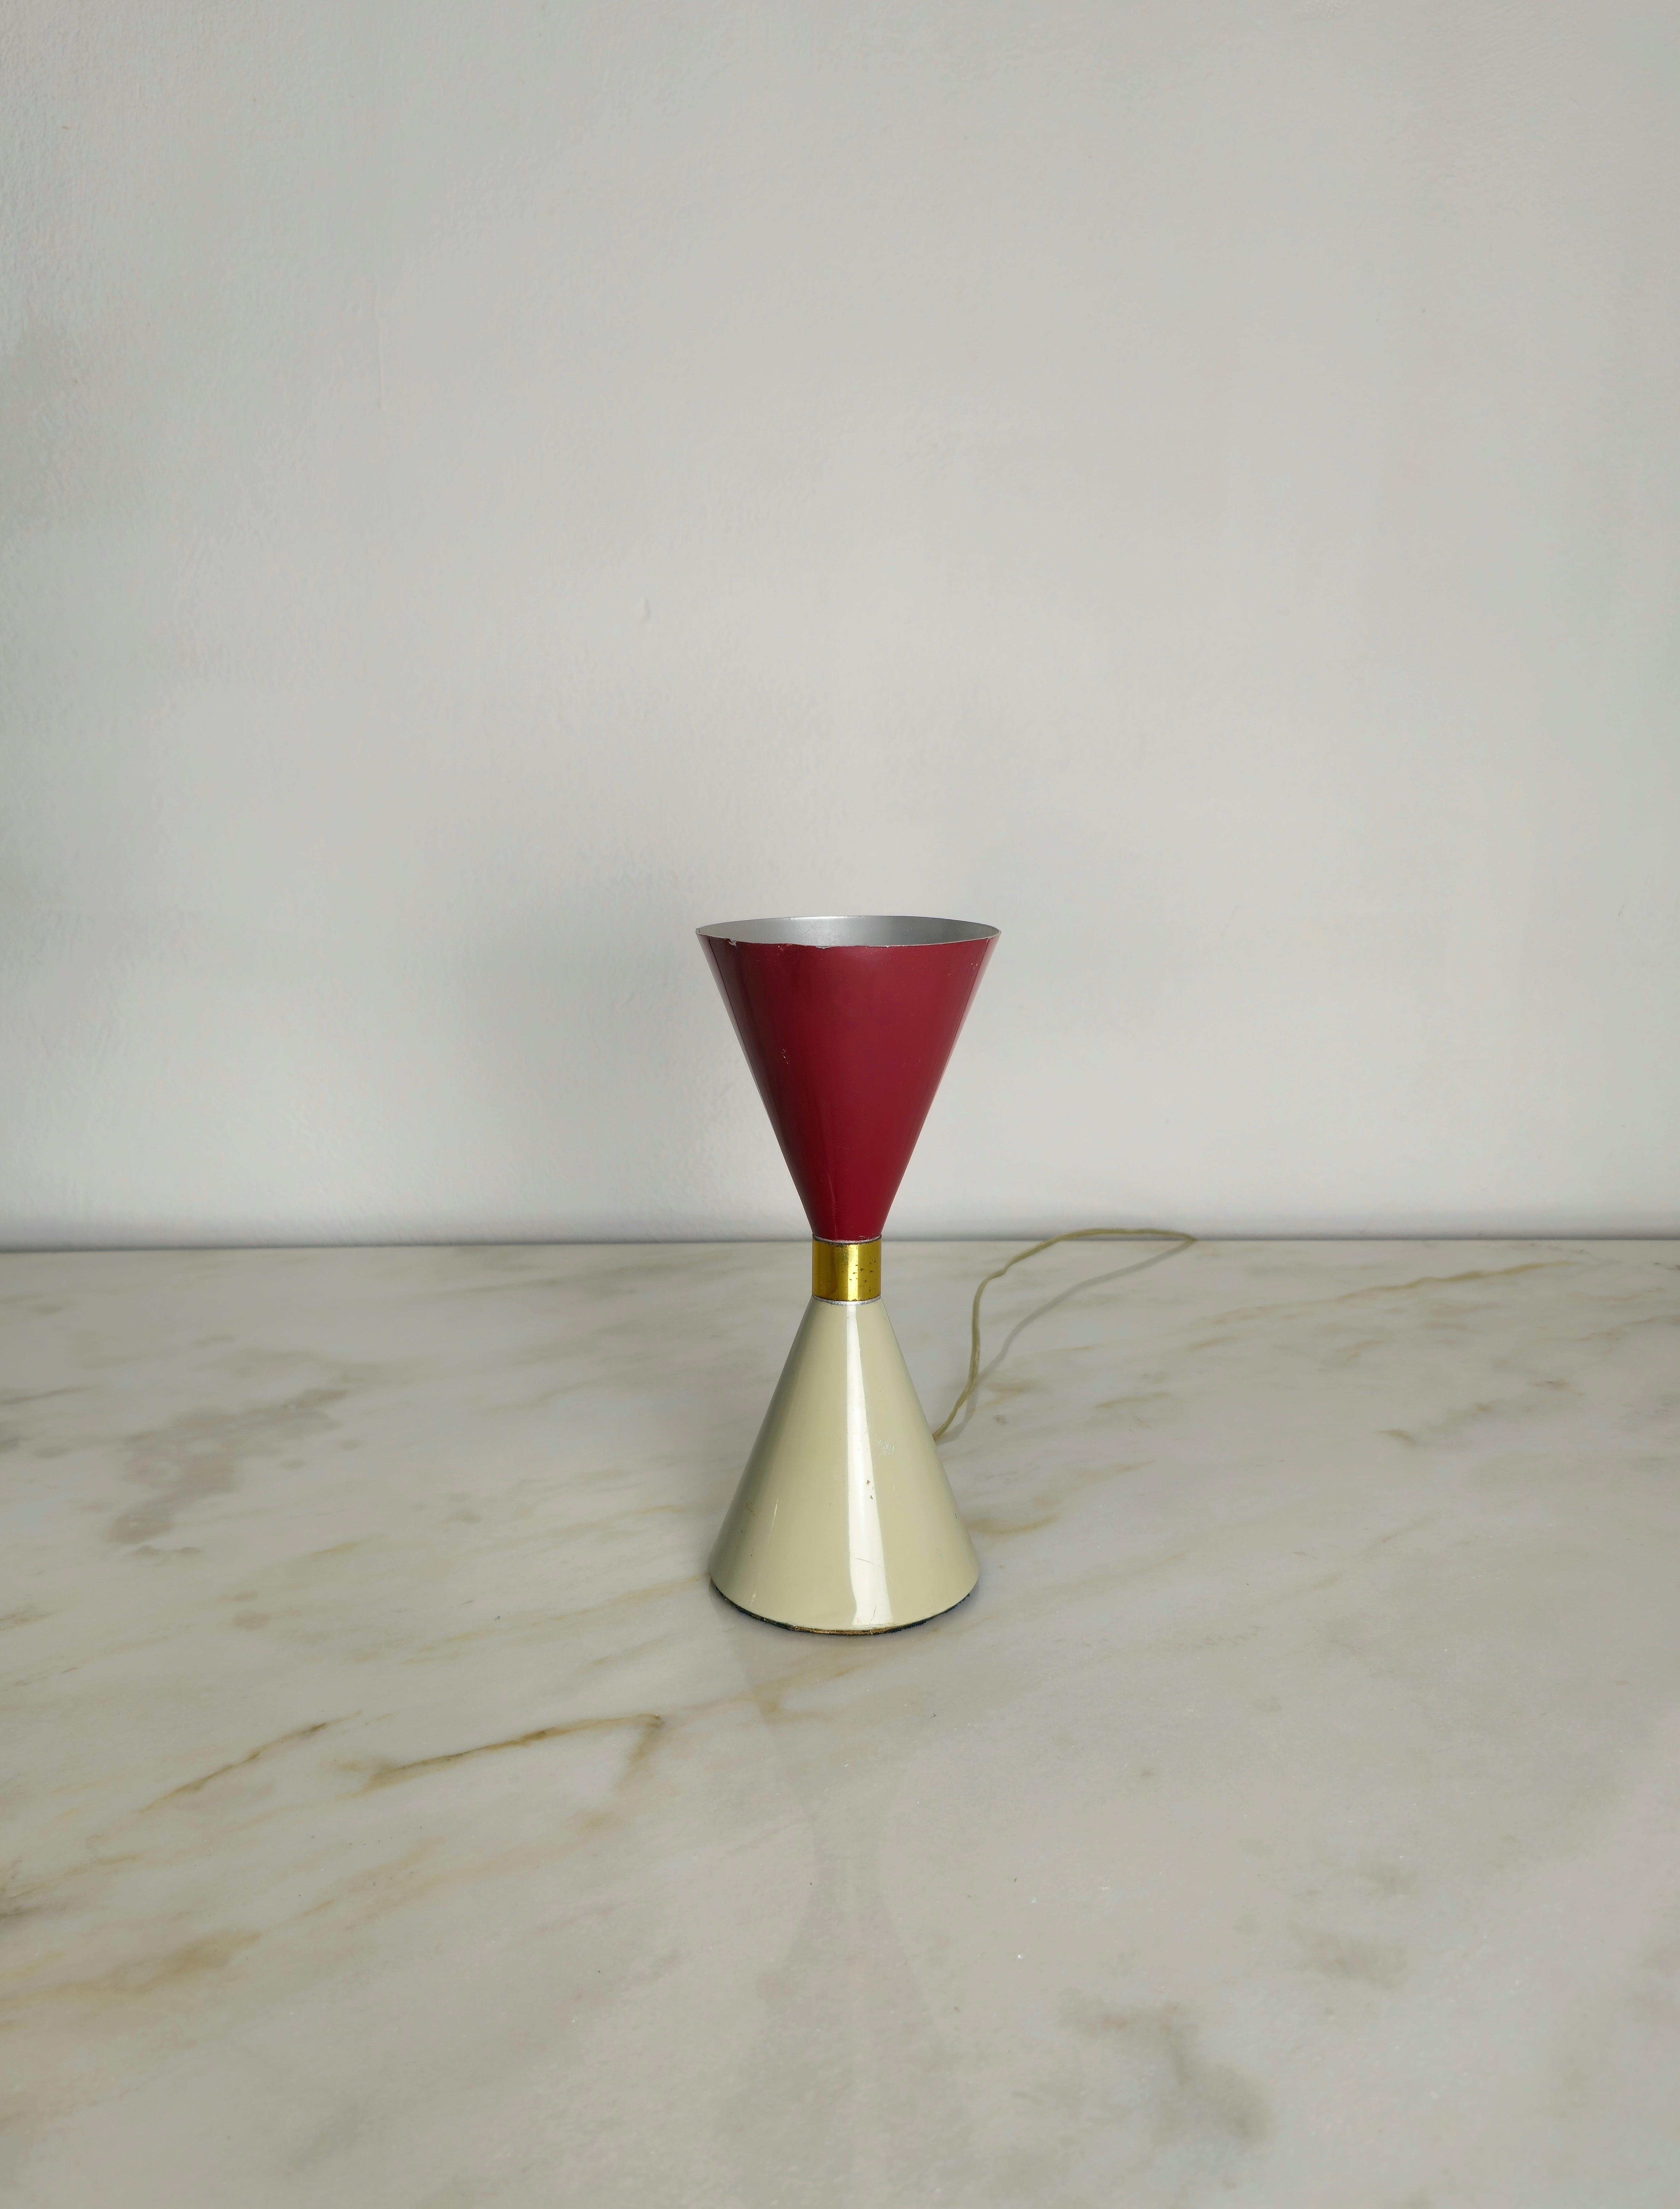 Tischleuchte mit 1 E27-Leuchtmittel im Arredoluce-Stil, hergestellt in Italien in den 1950er Jahren.
Die sanduhrförmige Lampe wurde aus emailliertem Aluminium in Rot- und Grautönen hergestellt.



Hinweis: Wir bemühen uns, unseren Kunden auch bei